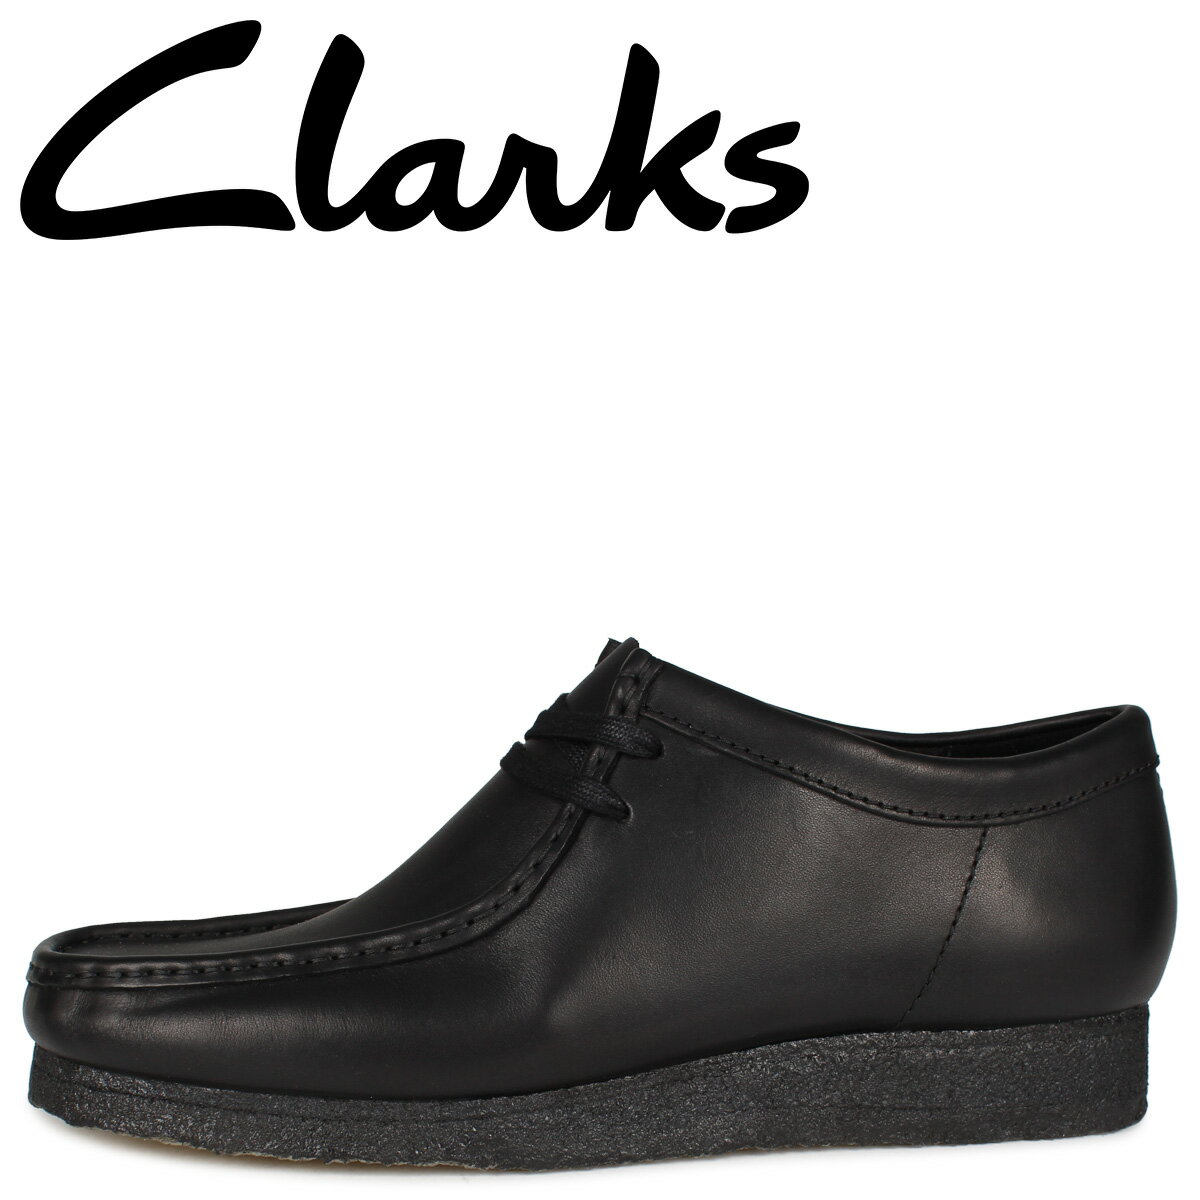 【最大1000円OFFクーポン配布中】 Clarks クラークス ワラビー ブーツ メンズ WALLABEE BOOT ブラック 黒 26155514